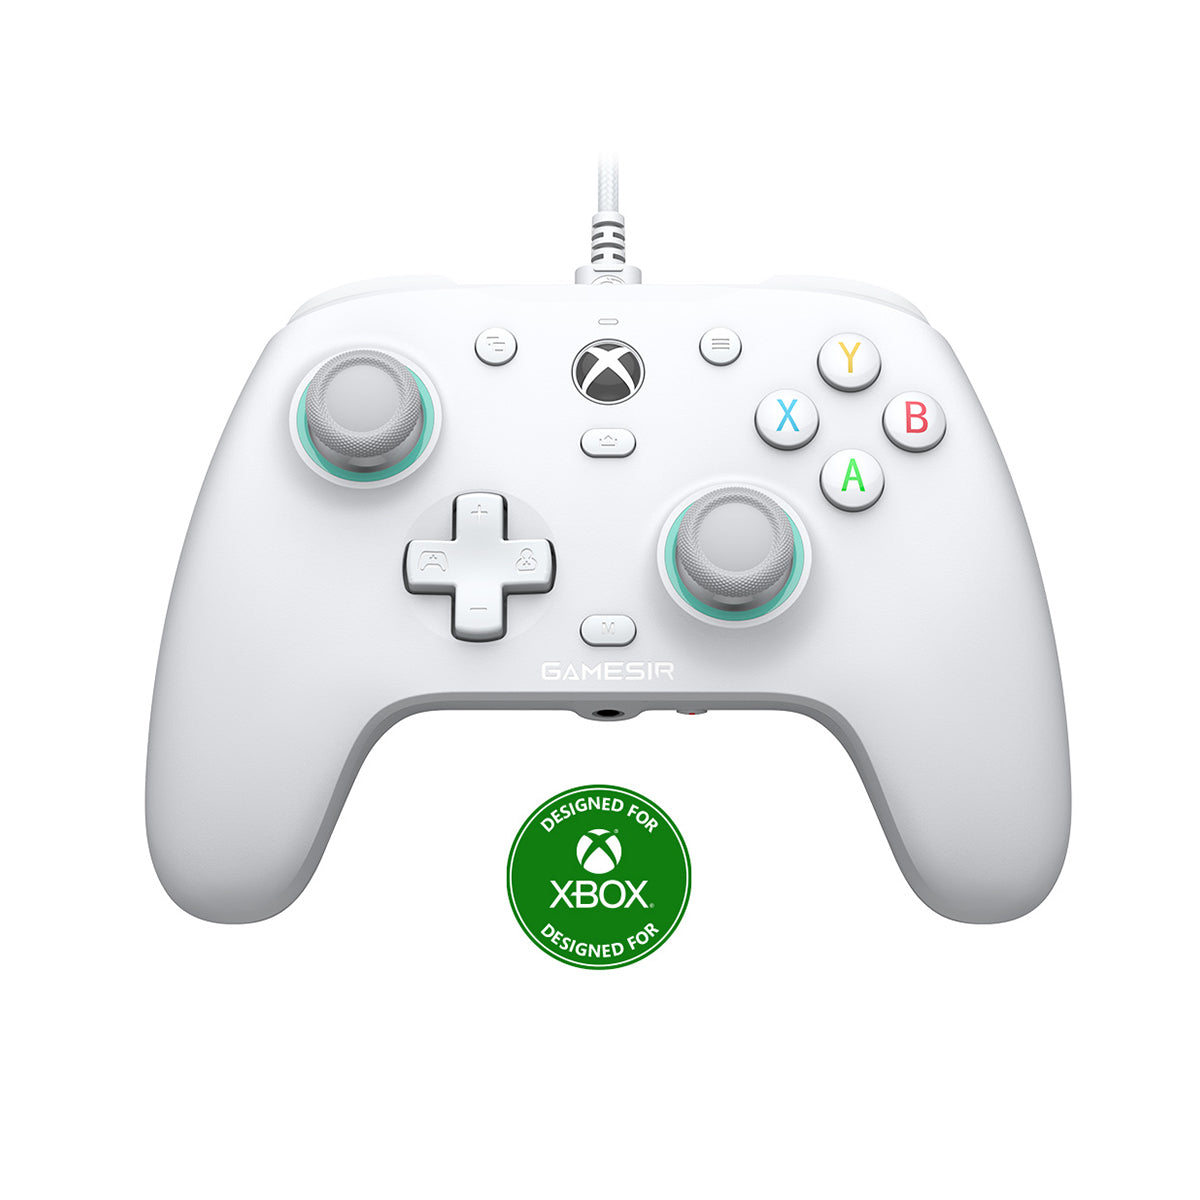 GameSir G7 SE - Controller Xbox Certified